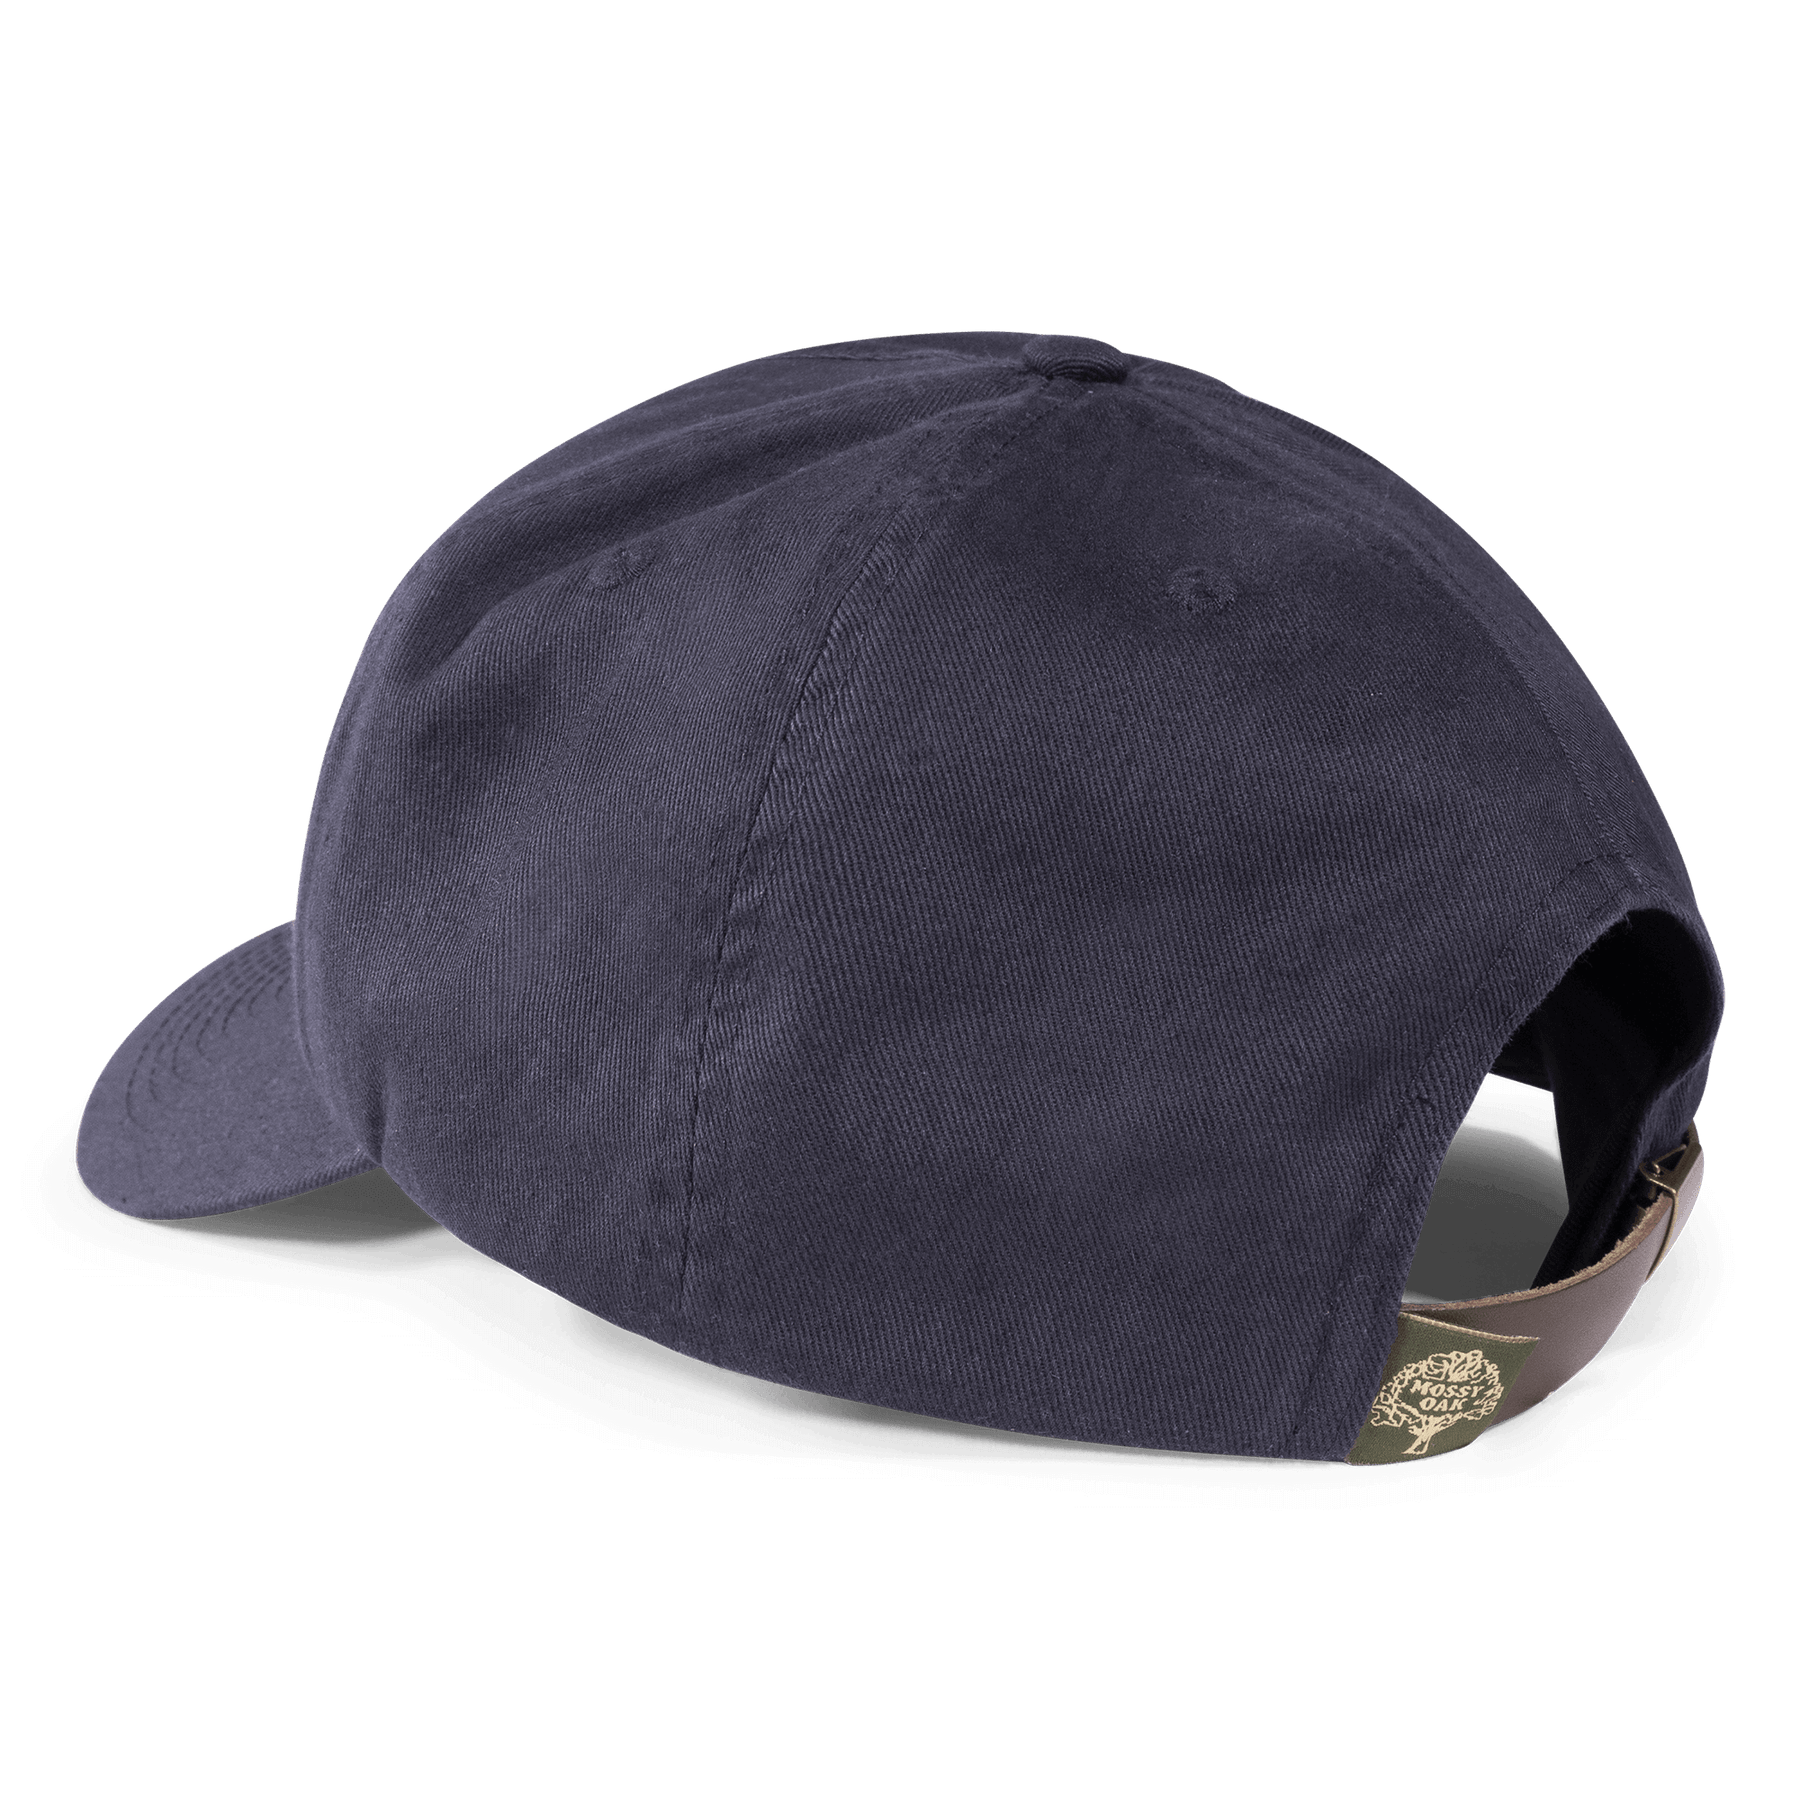 Companions Headwear – The Mossy Oak Store